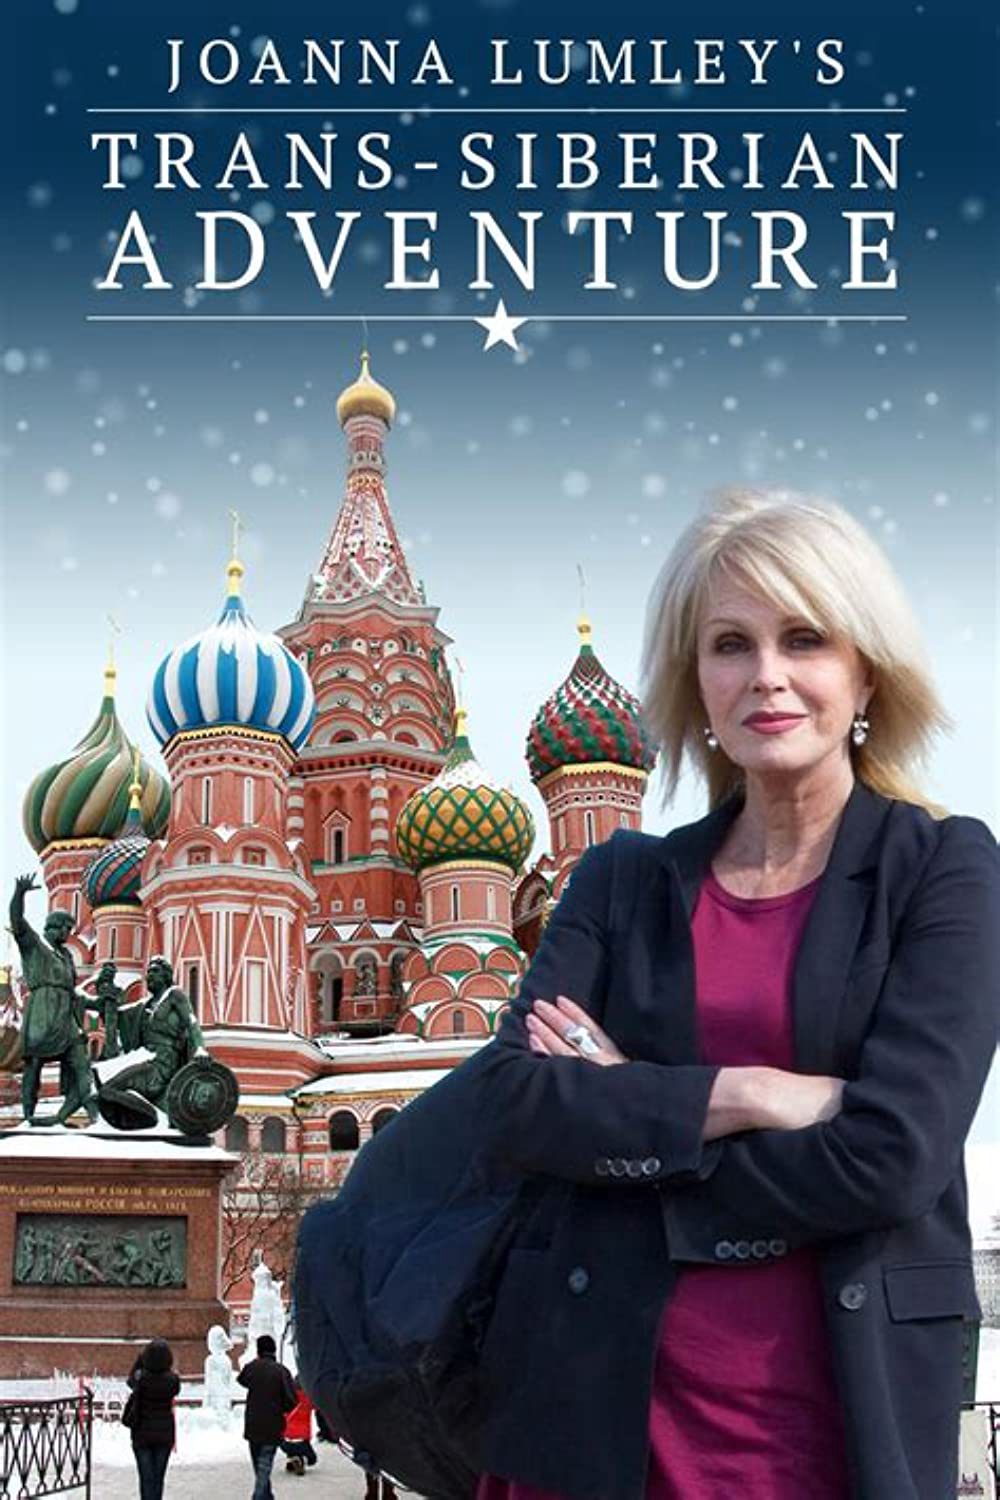 Joanna Lumley: Hành trình xuyên Siberia (Joanna Lumley's Trans-Siberian Adventure) [2015]